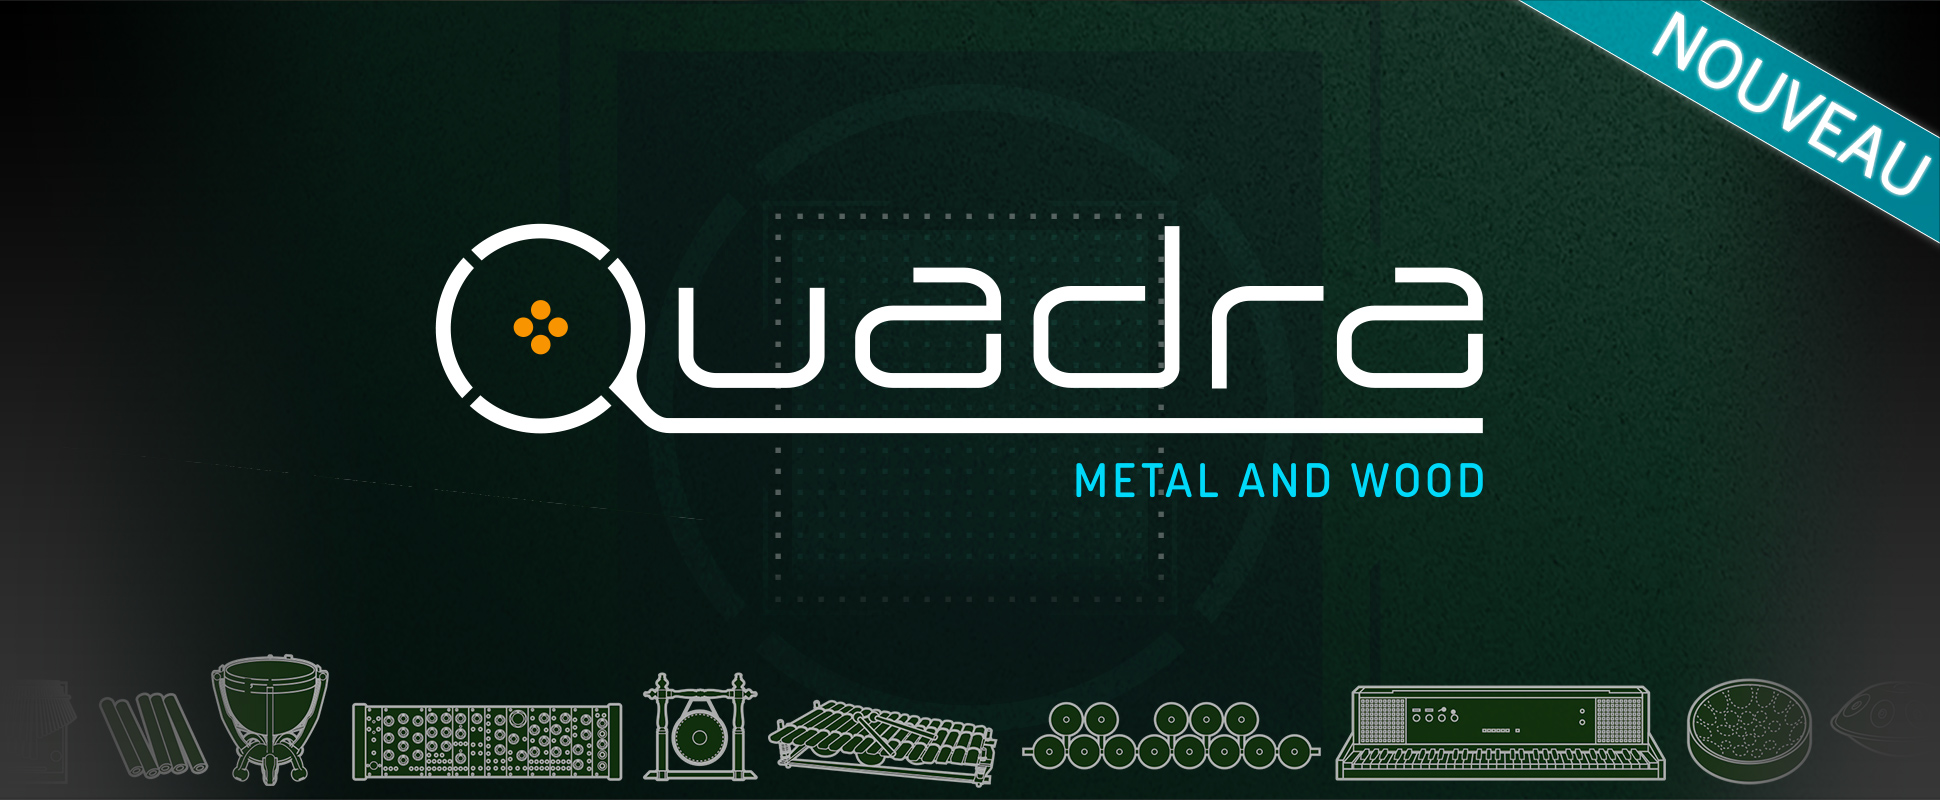 Quadra - Metal and Wood NEW